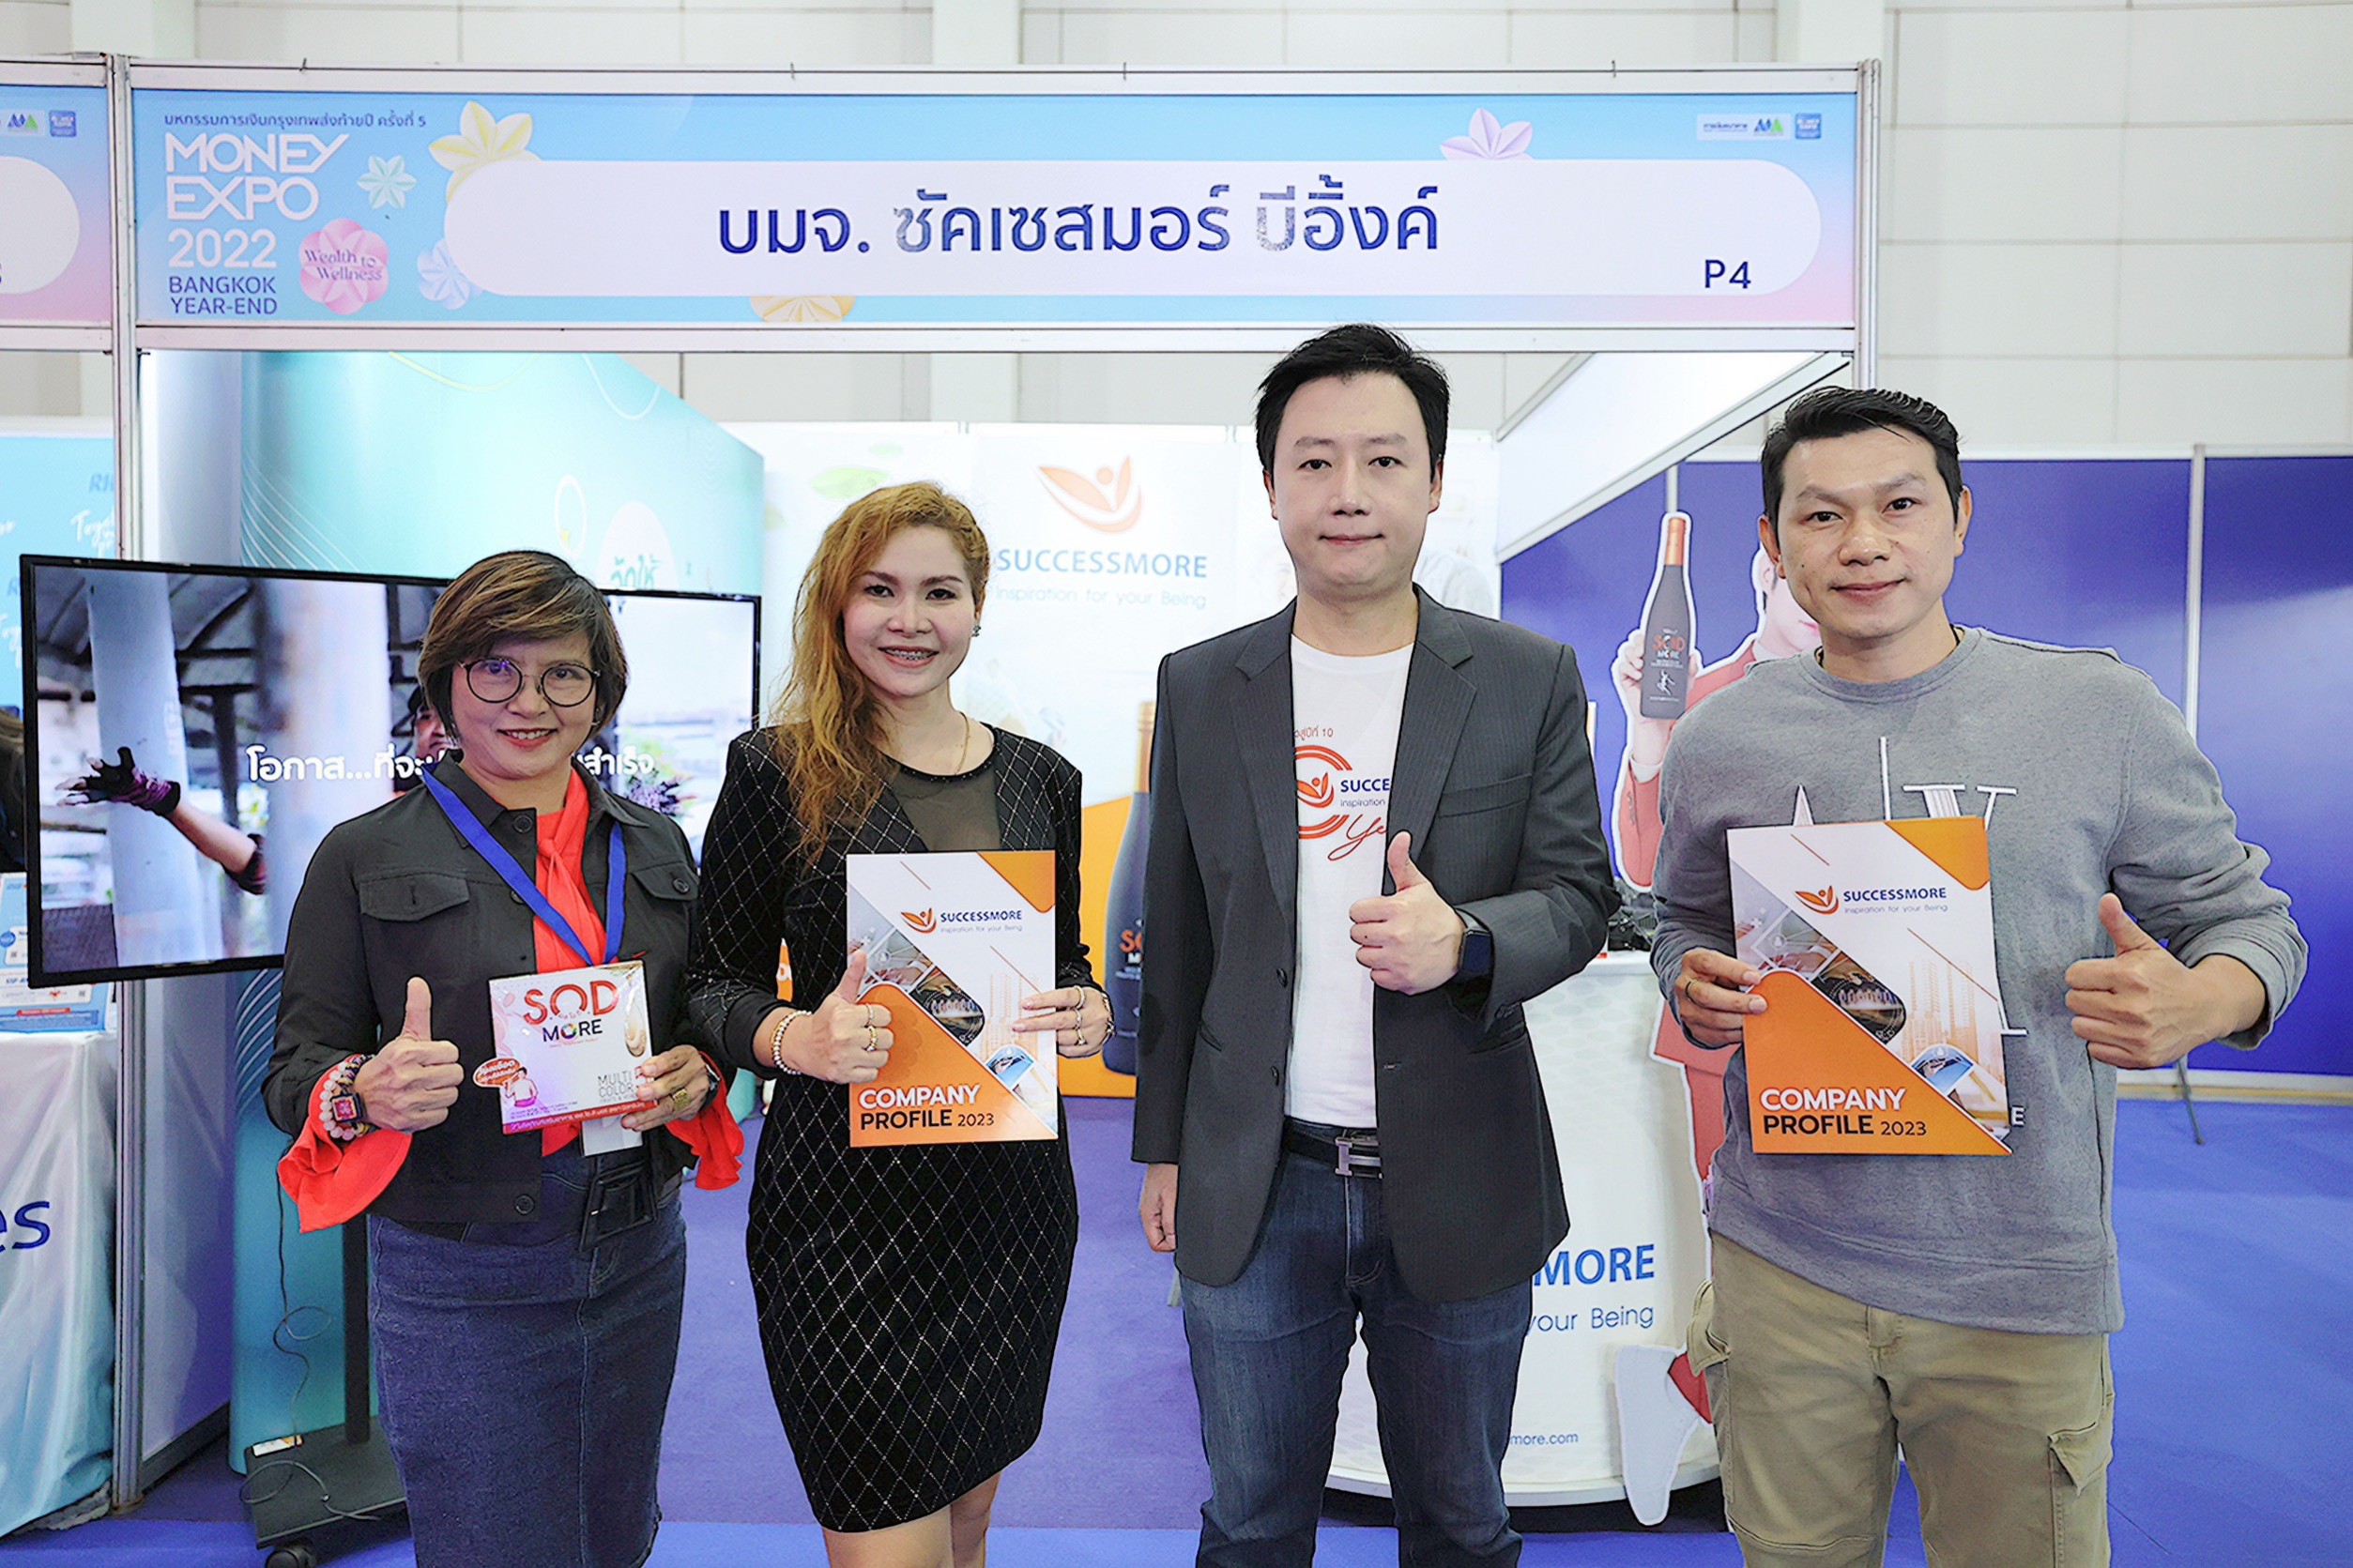 ซัคเซสมอร์ ขนทัพสินค้าเพื่อดูแลสุขภาพคนไทย ในงานมหกรรมการเงินส่งท้ายปี ครั้งที่ 5 MONEY EXPO 2022 BANGKOK YEAR-END